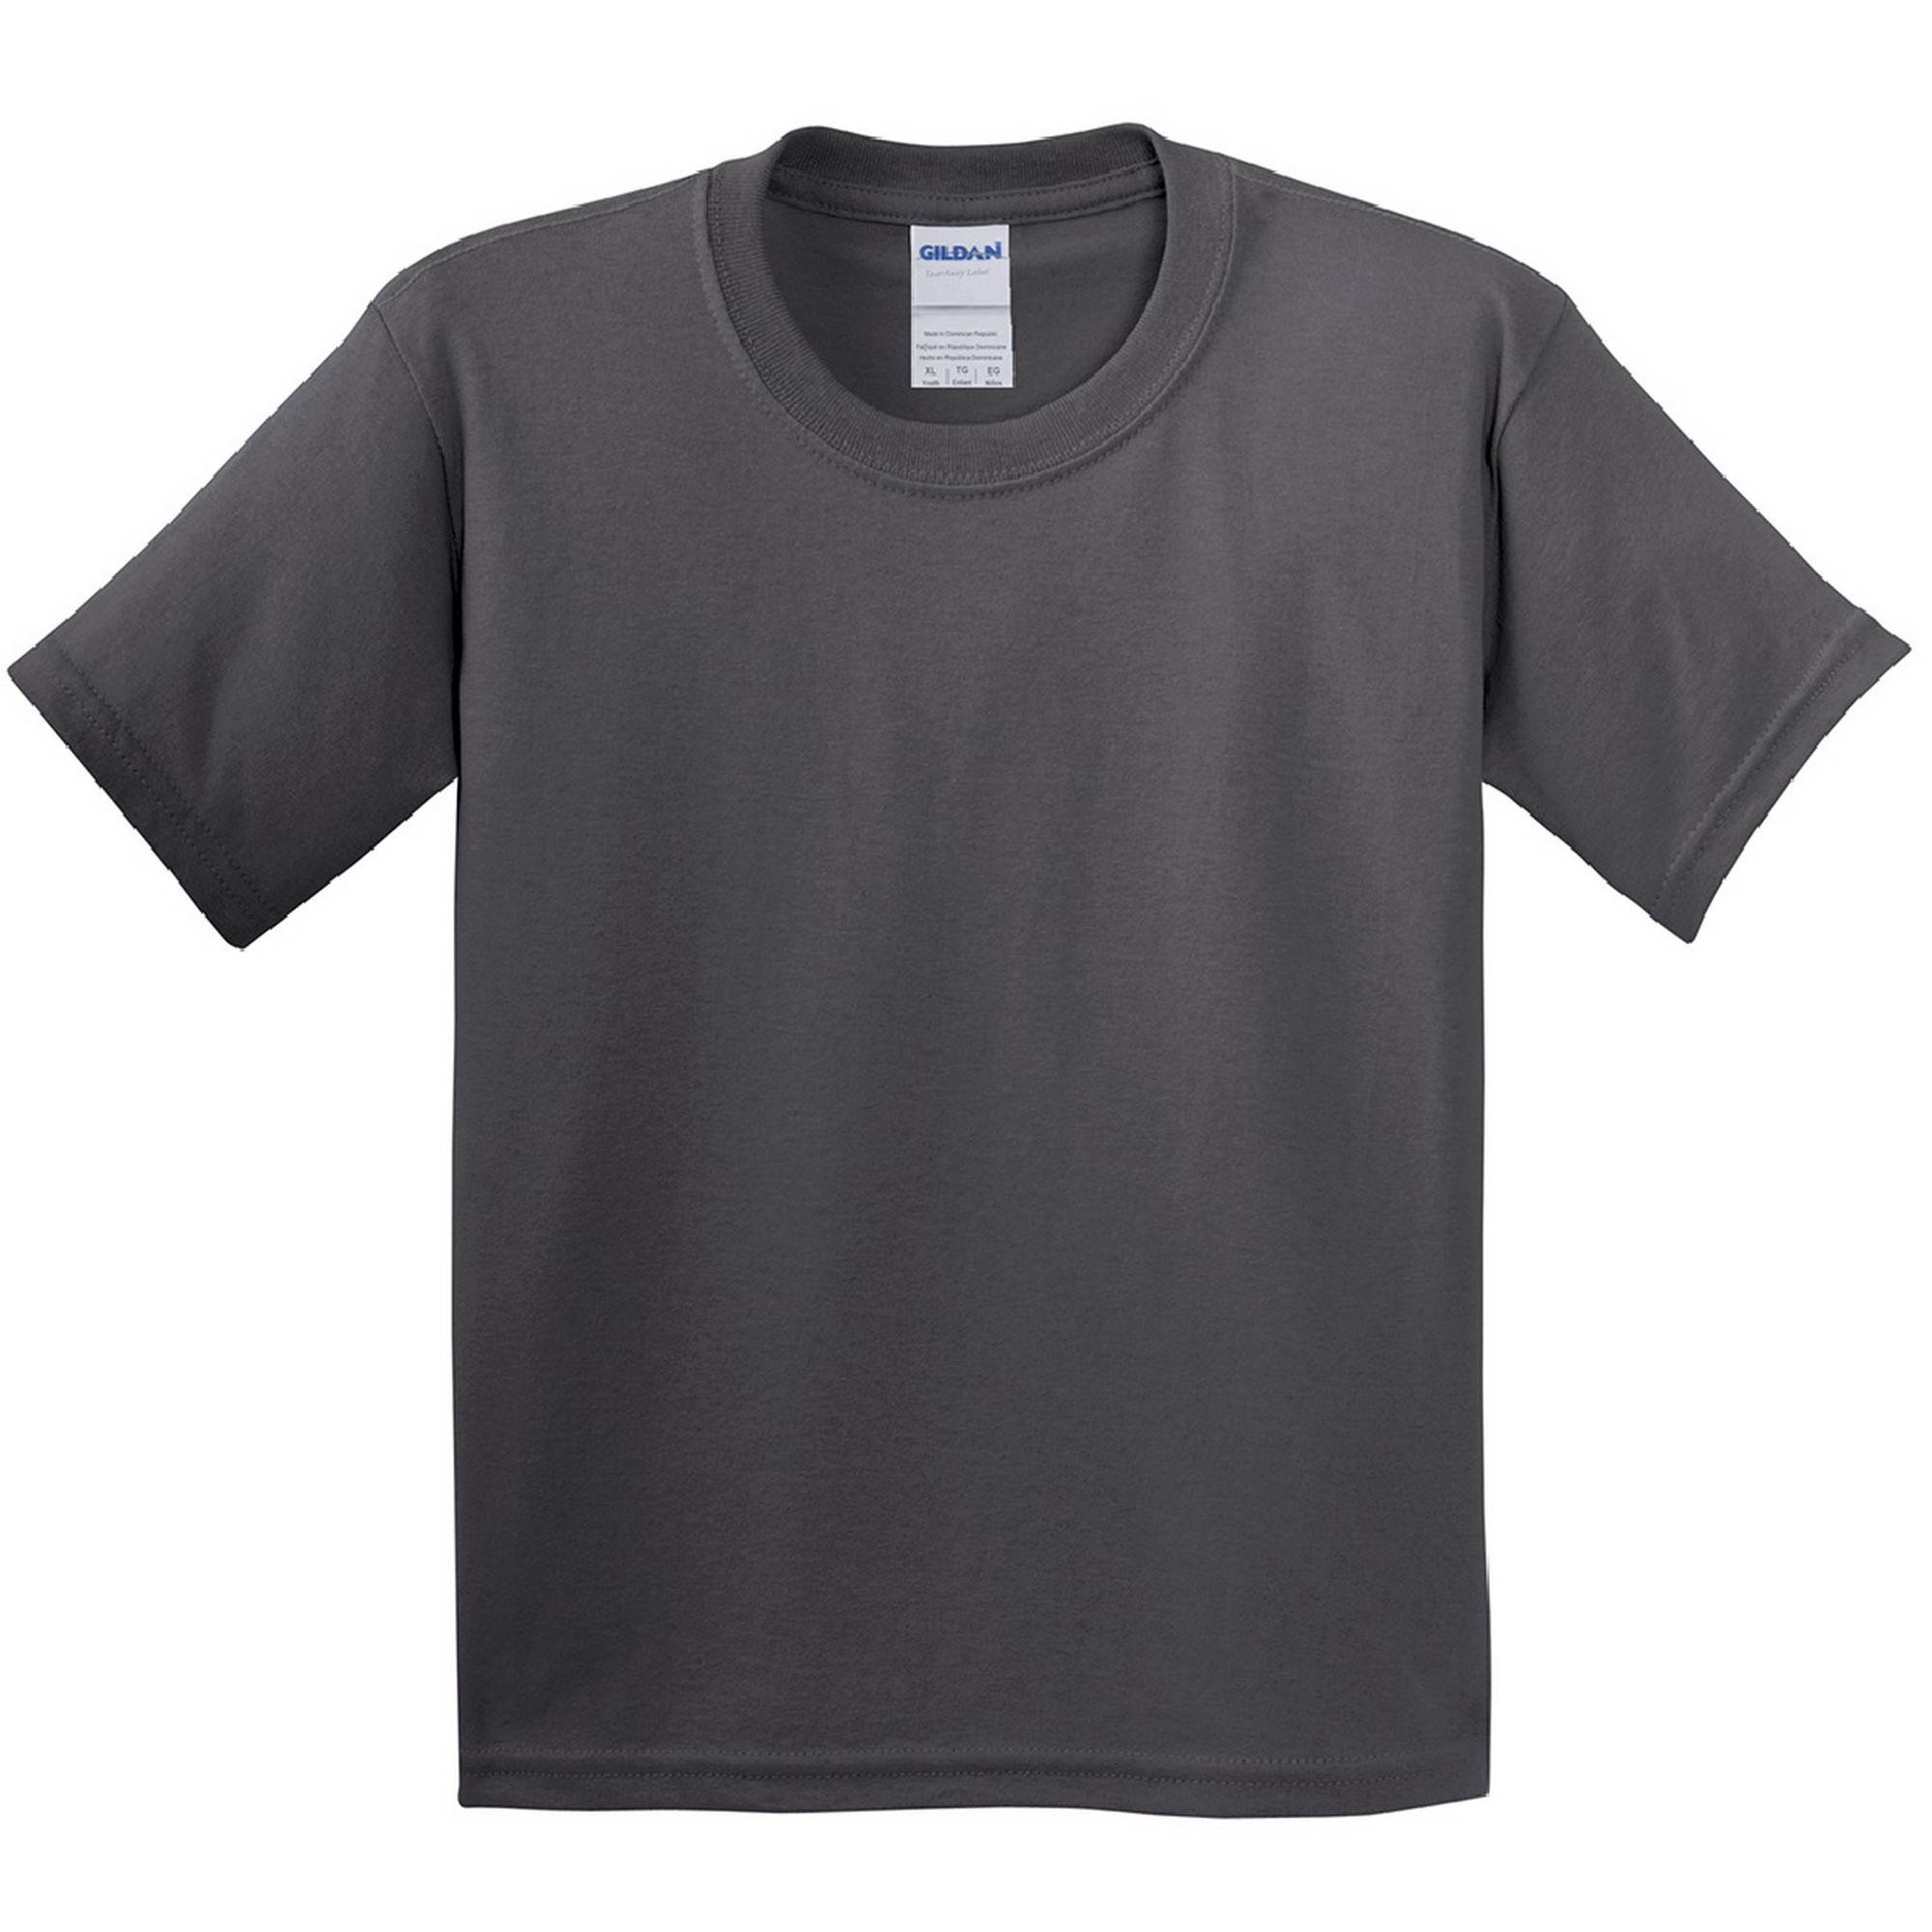 T-shirt Gildan - gris-oscuro - 